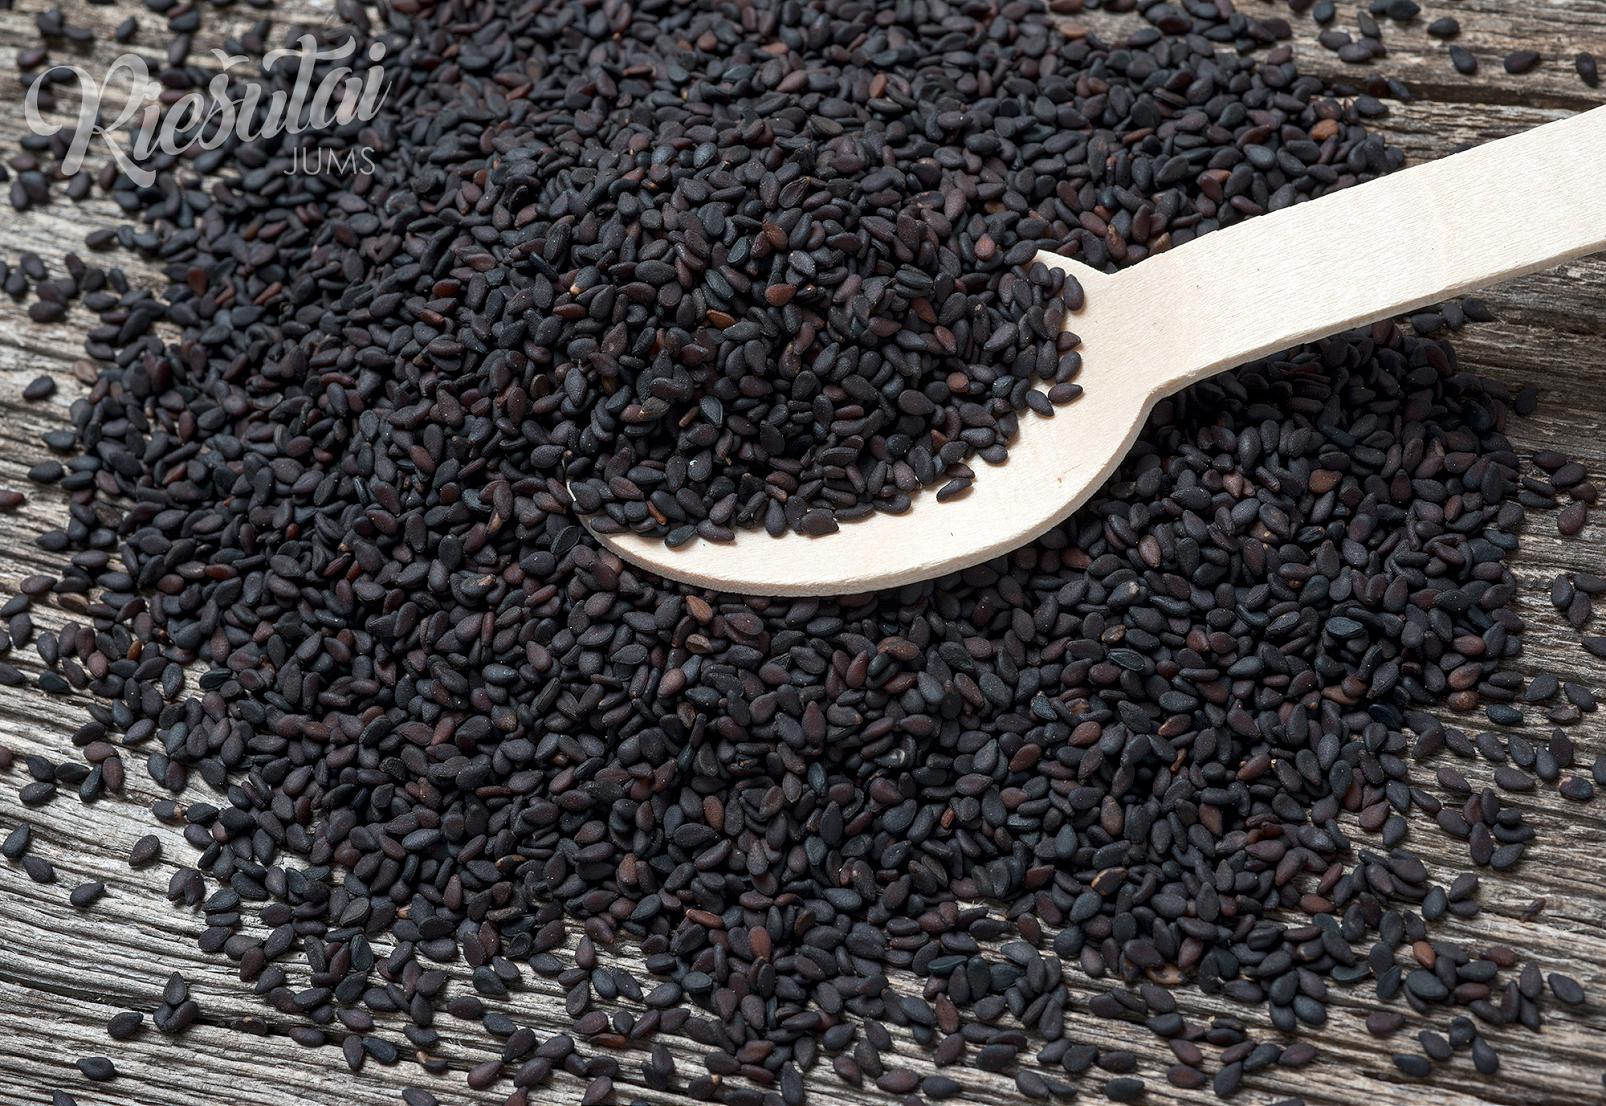 Черные семена похожие. Кунжут Hikari черные семена, 1кг. Кунжут семена черные 99,90% Индия (1кг). Кунжут черный семя 1 кг 5шт. Маленькие черные семена похожие на кунжут.